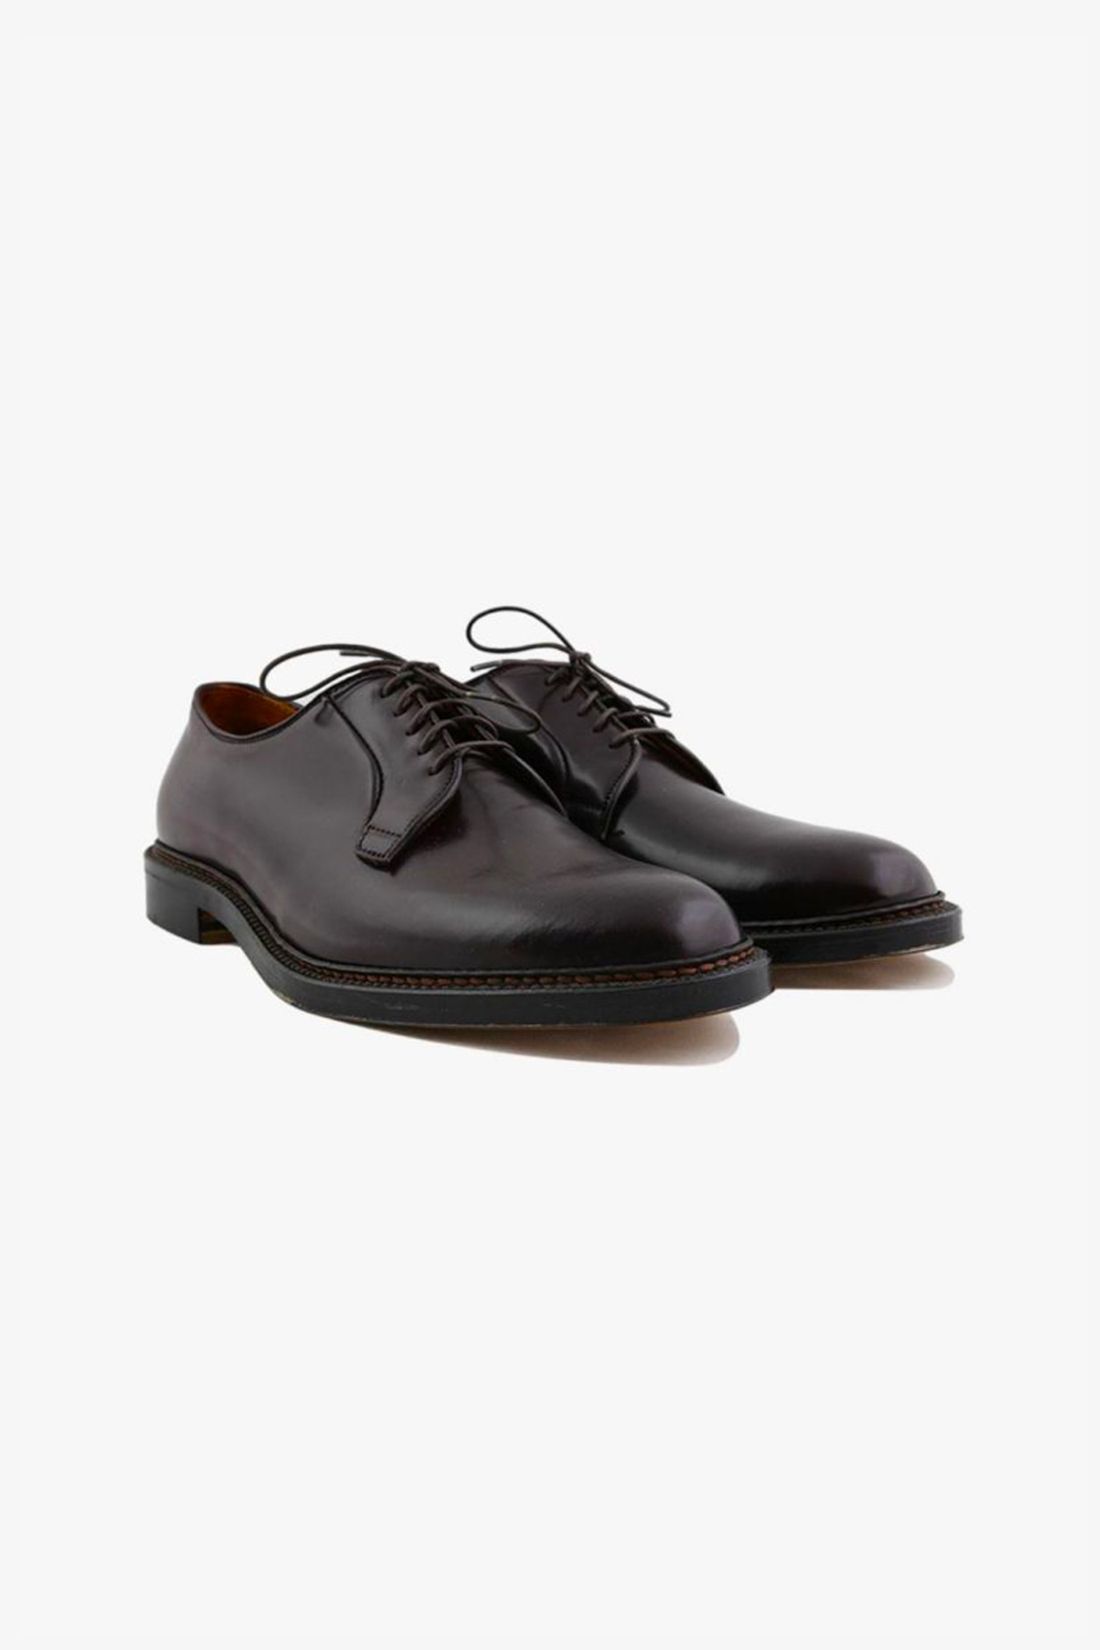 alden-shoe-company-9901-plaintoe-blucher-cordovan-black.jpg